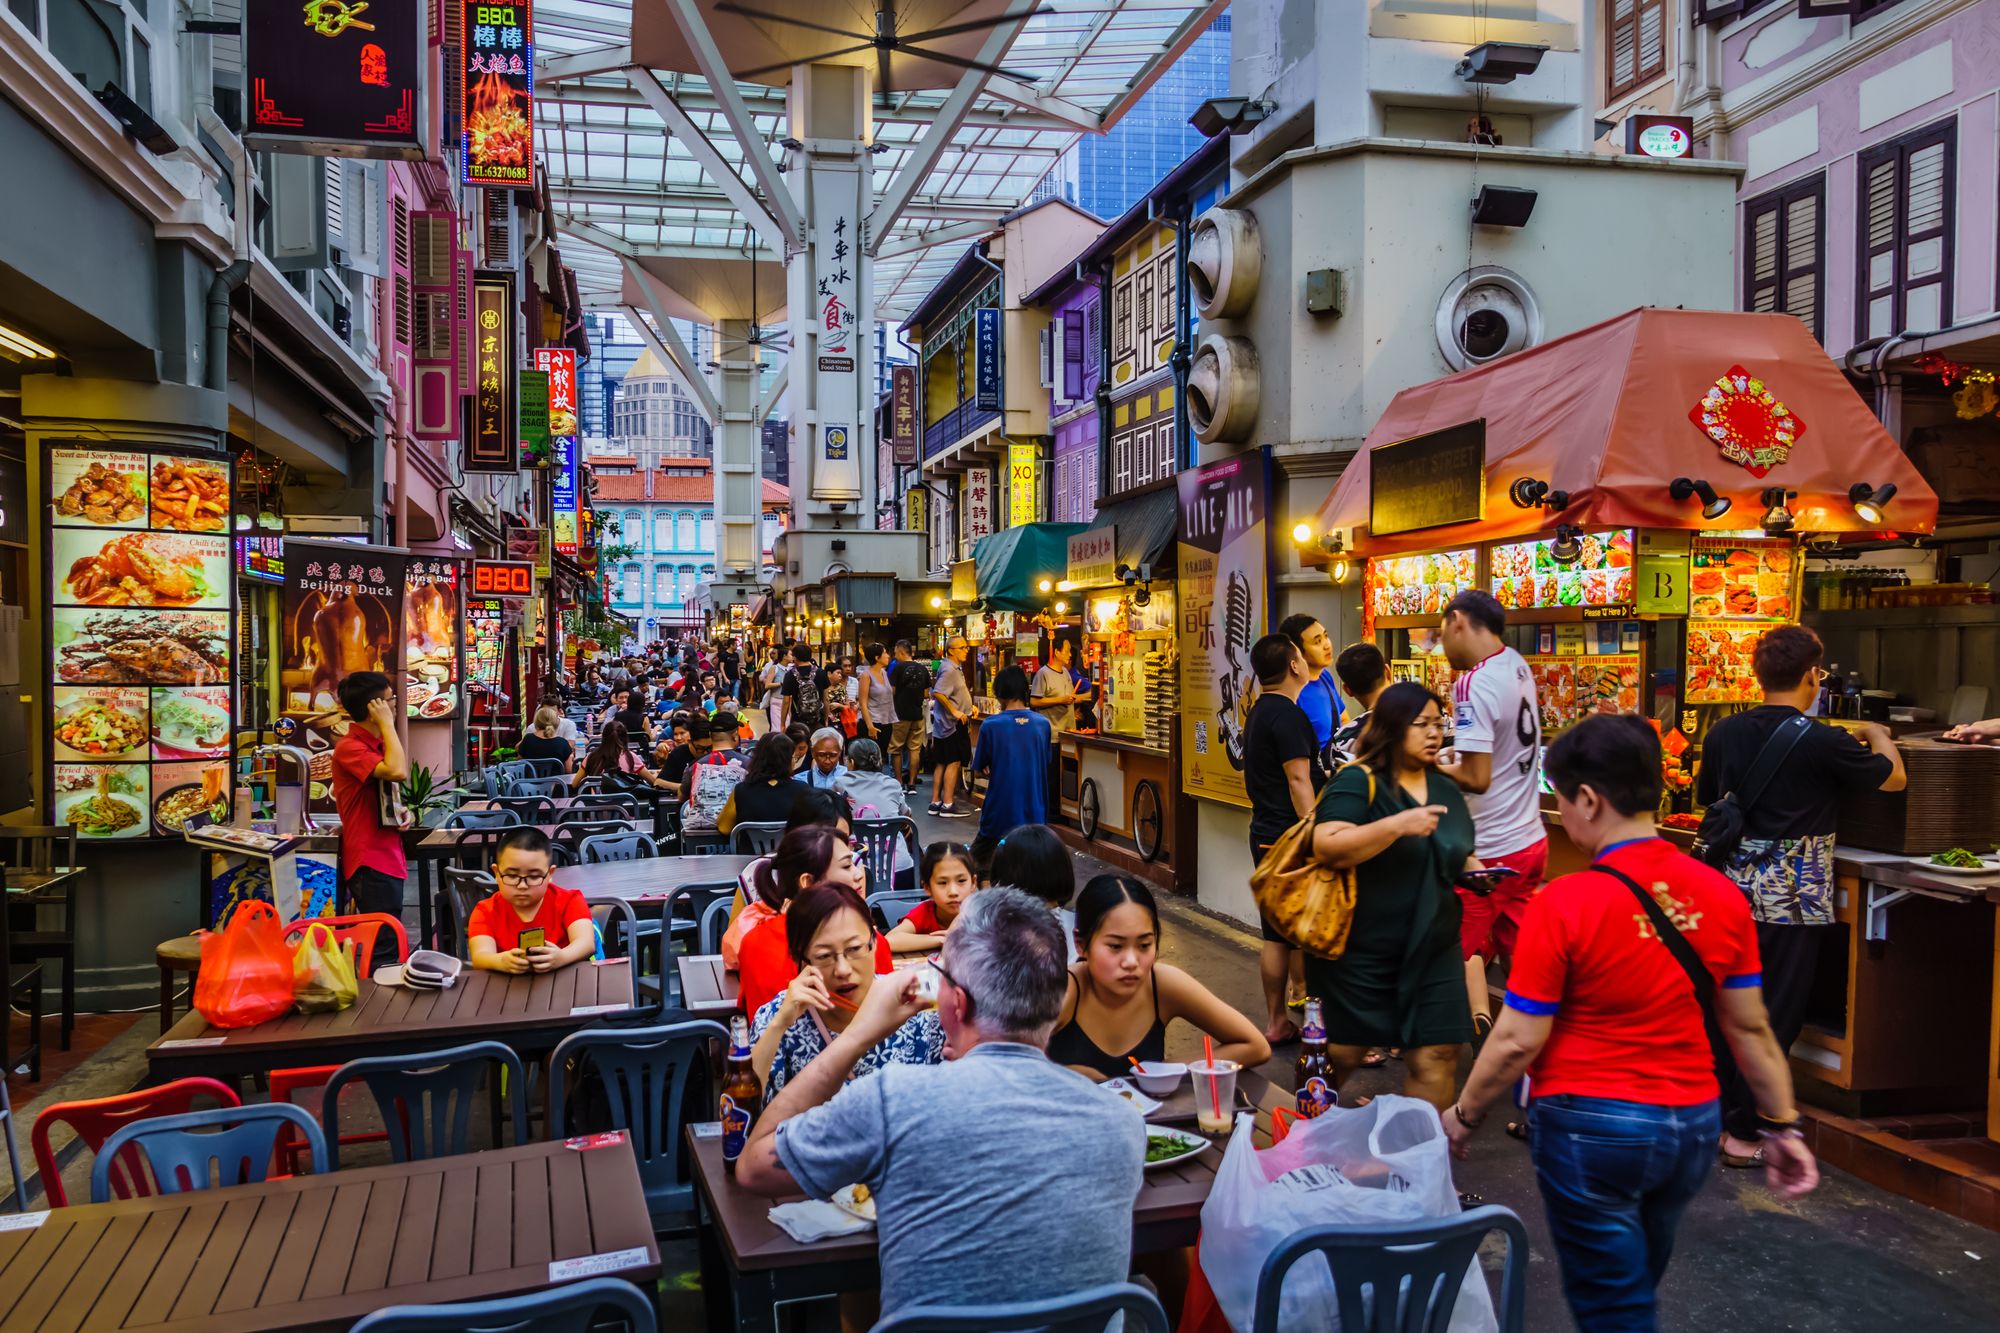 The hawker market on Smith Street in Chinatown. Photo: Derek Teo/Shutterstock.